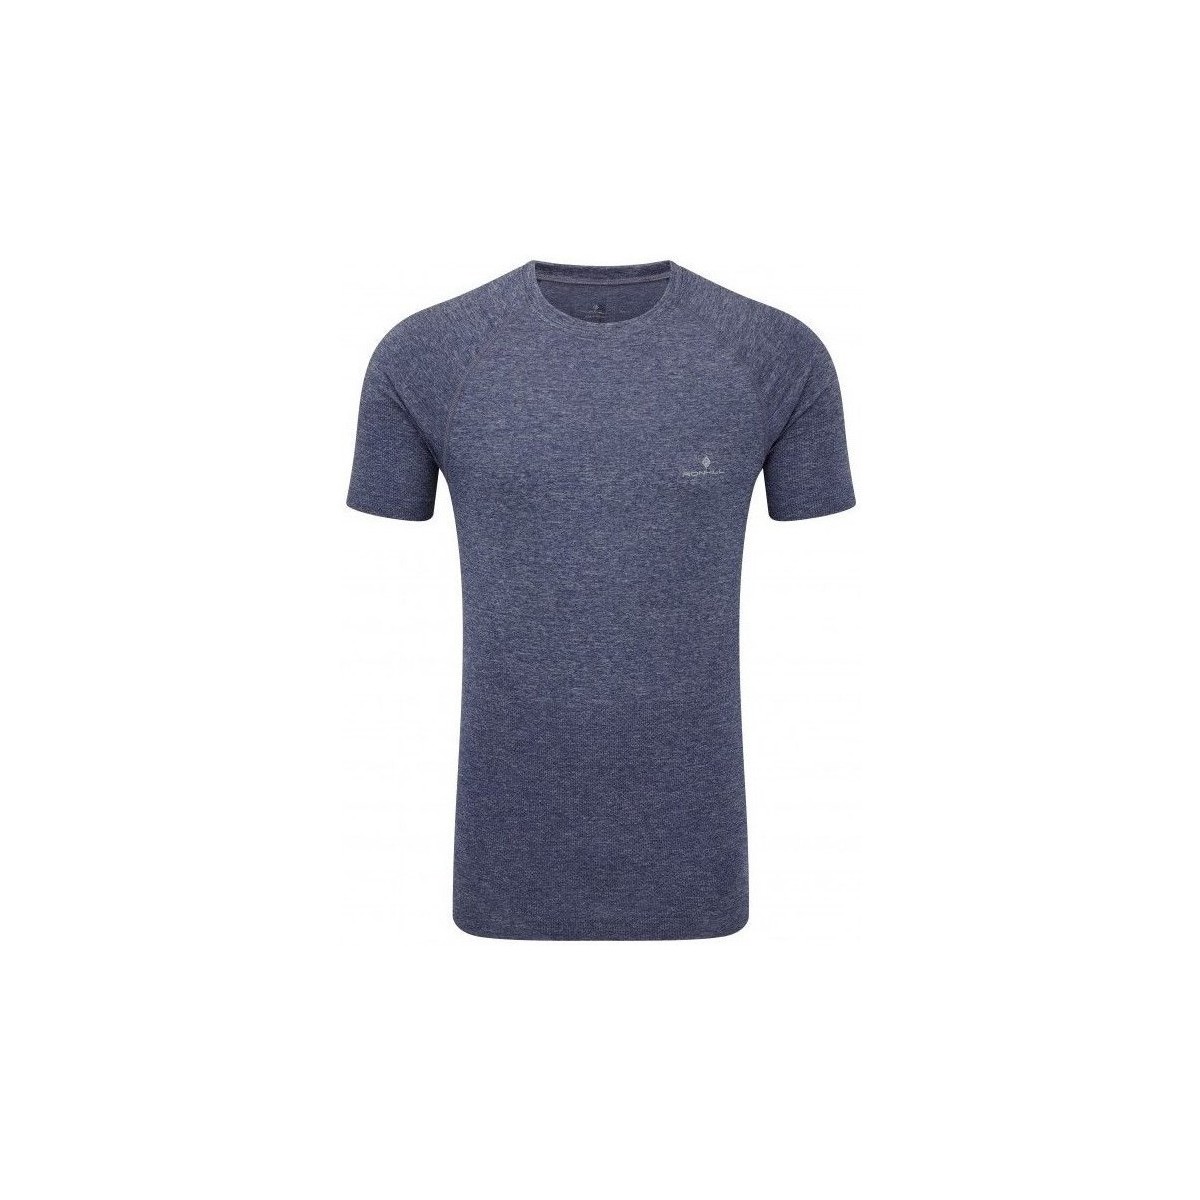 Textil Muži Trička s krátkým rukávem Ronhill Advance Cool Knit SS Tee Tmavě modrá